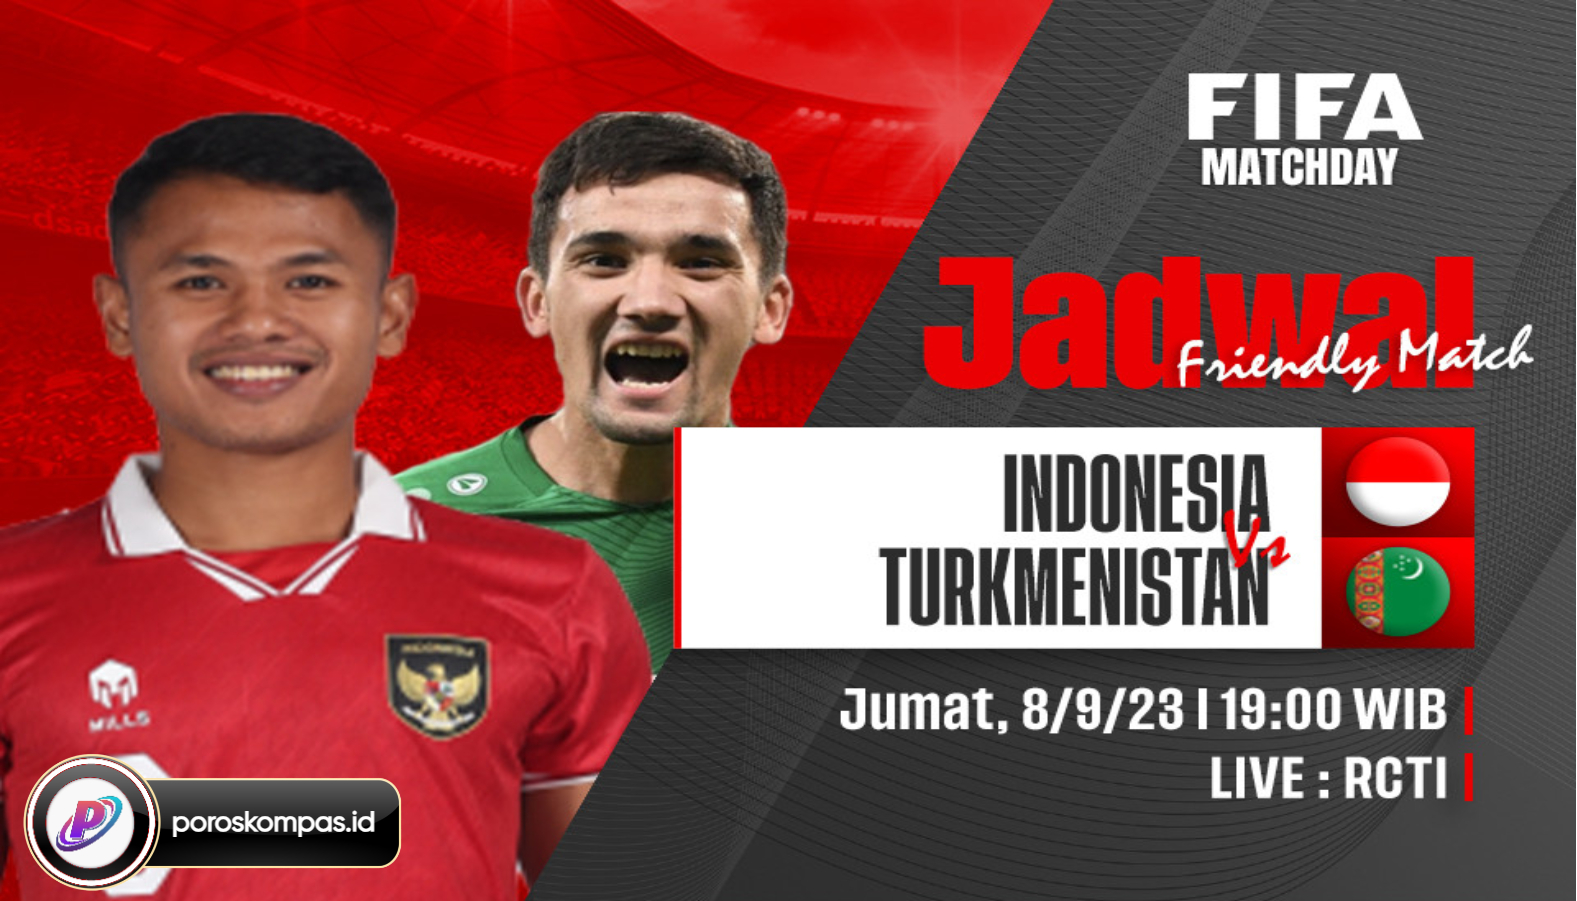 Jadwal Timnas Indonesia vs Turkmenistan di FIFA Matchday 2023 Live RCTI